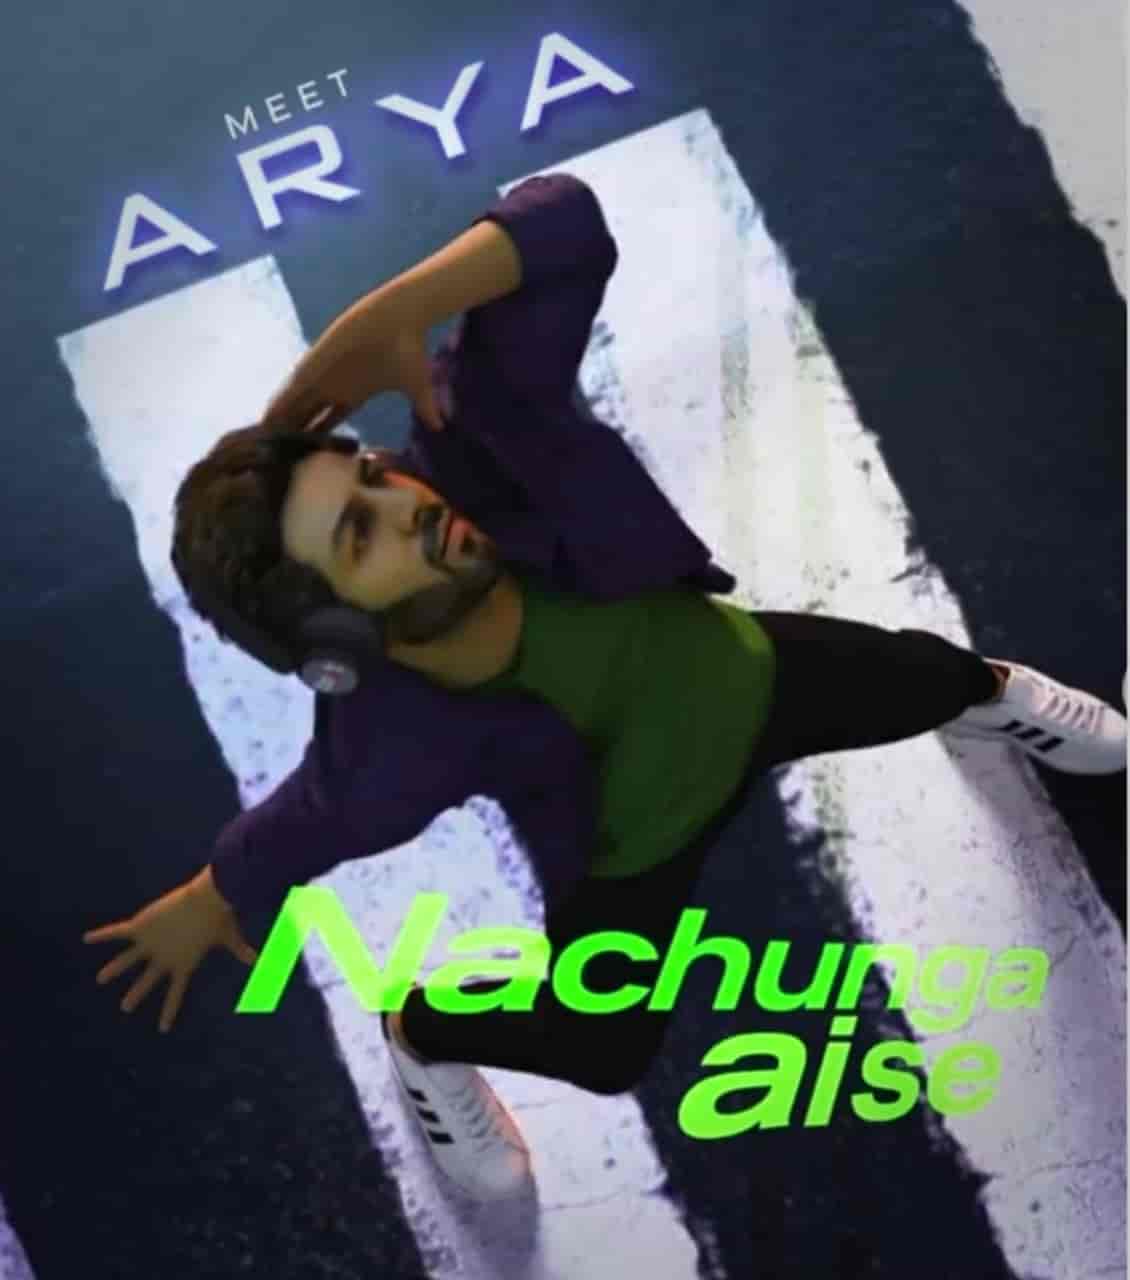 Nachunga Aise Hindi Song Image Features Kartik Aryan